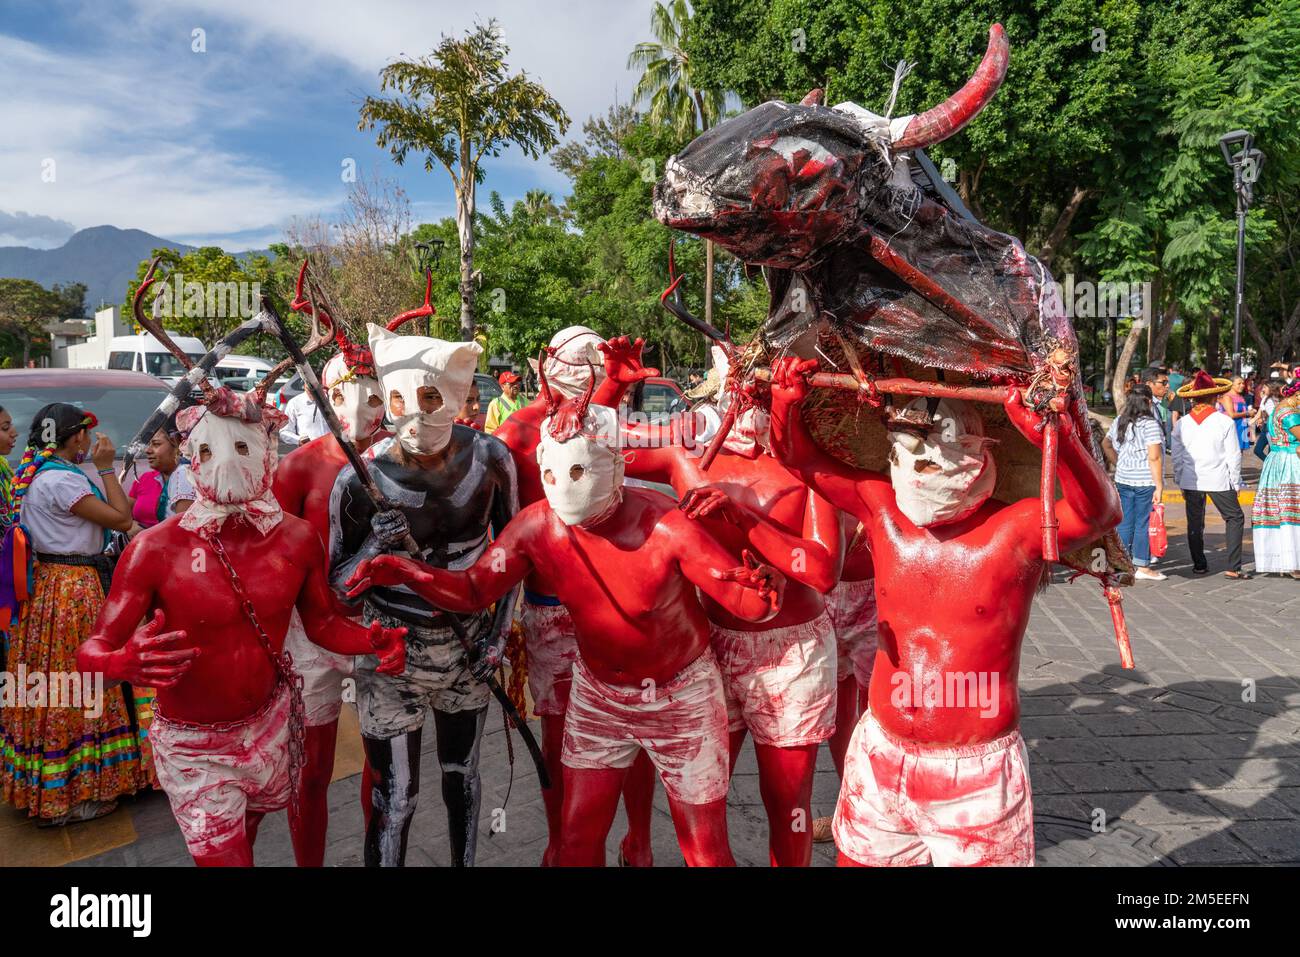 Peignez des danseurs de diable en costume lors d'une parade pour le festival de danse folklorique Guelaguetza à Oaxaca, au Mexique. Banque D'Images